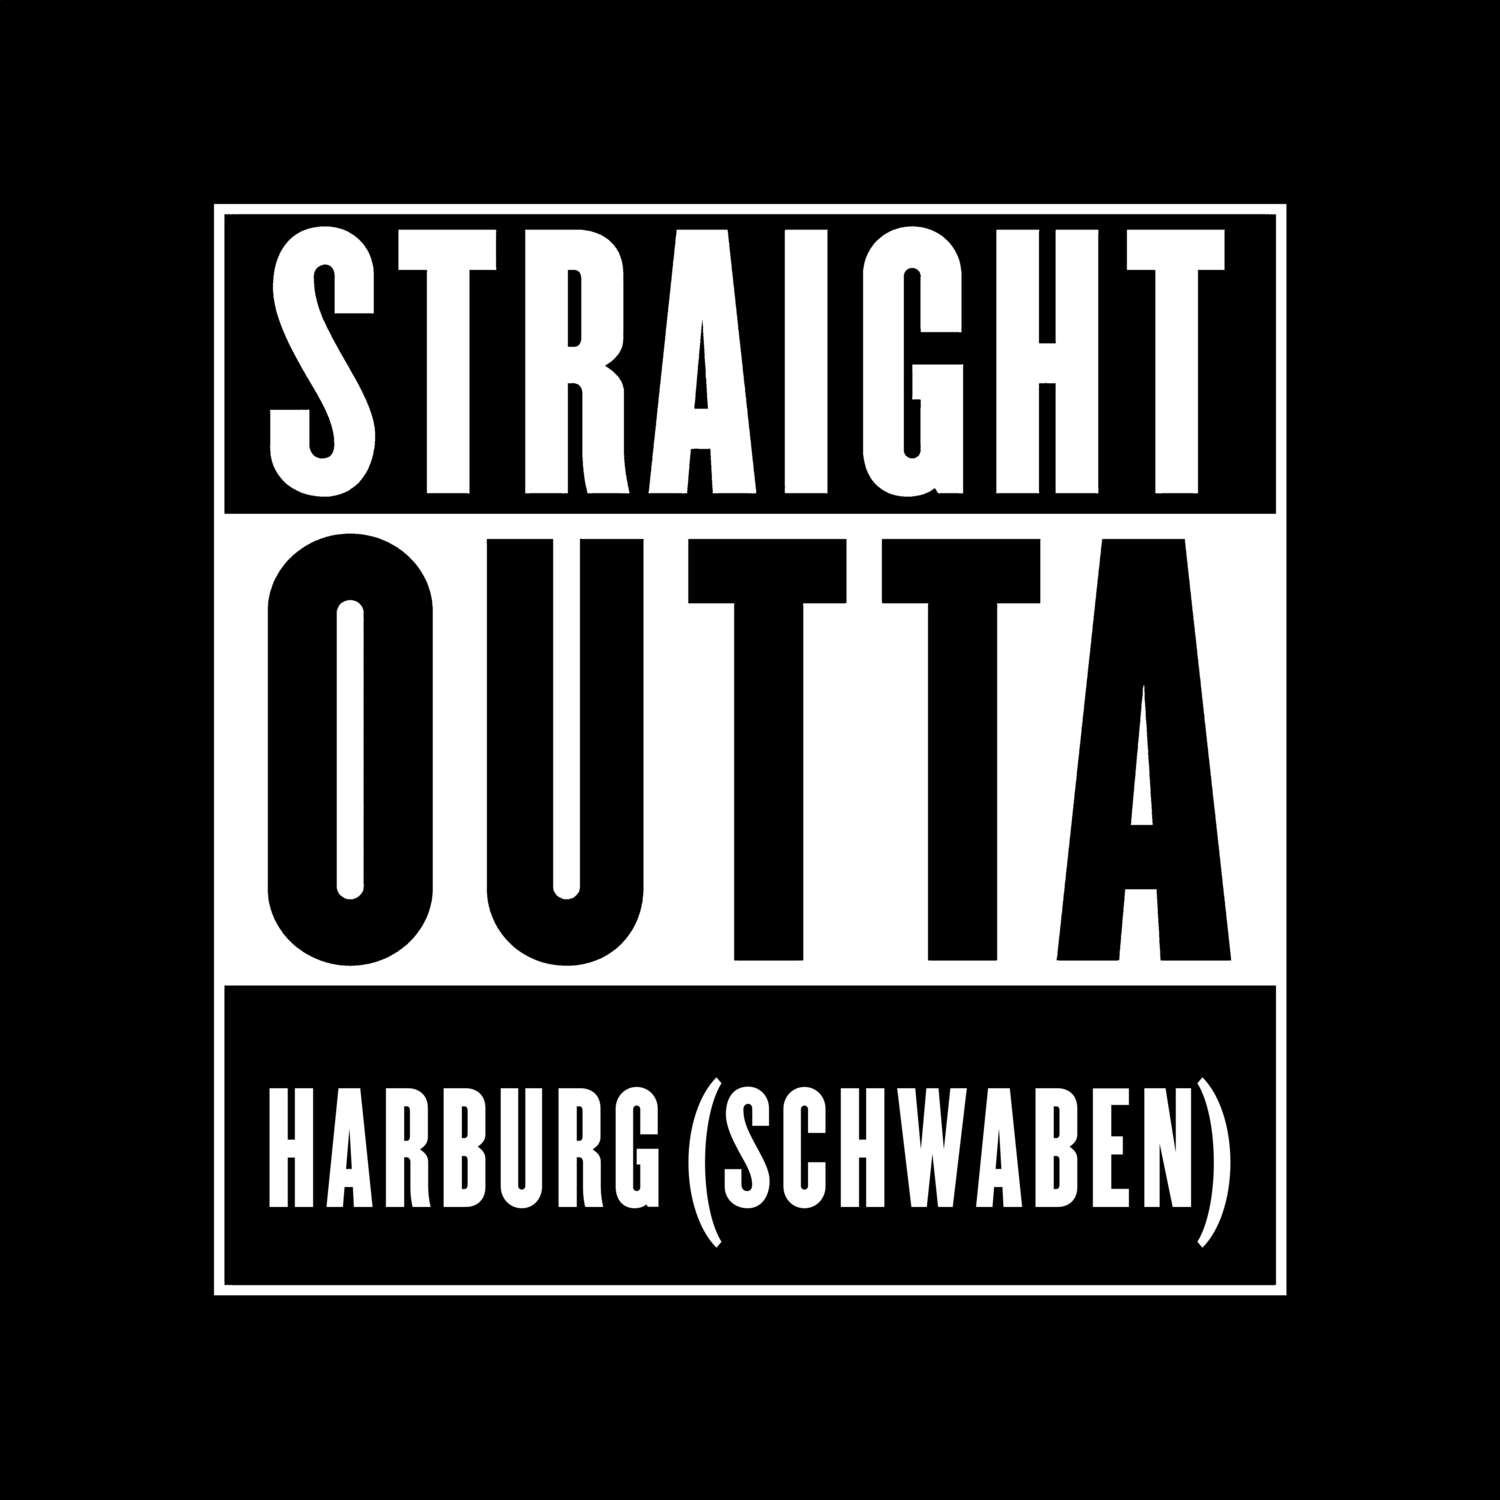 Harburg (Schwaben) T-Shirt »Straight Outta«